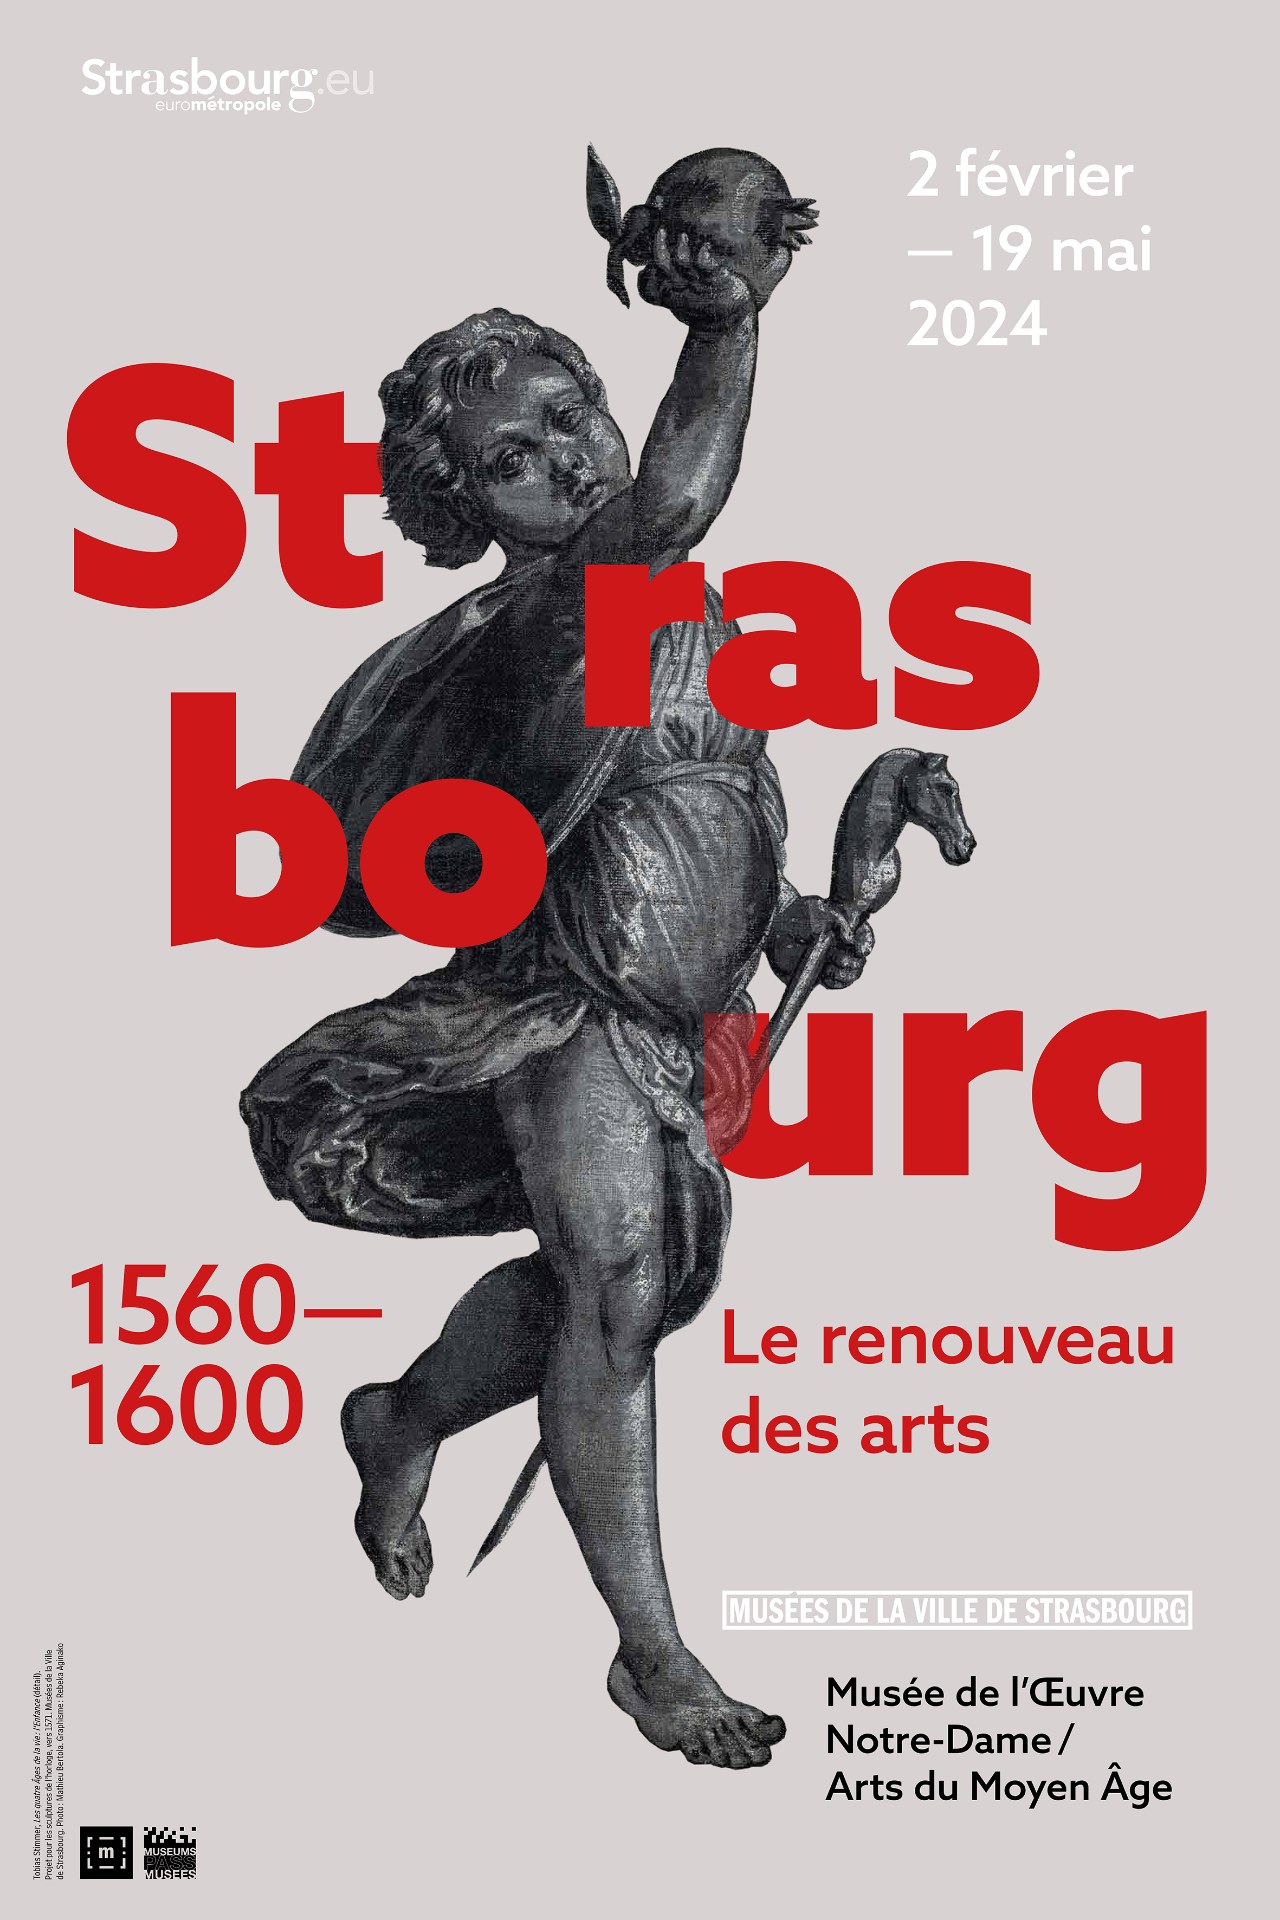 Strasbourg 1560-1600. Die Erneuerung der Knste